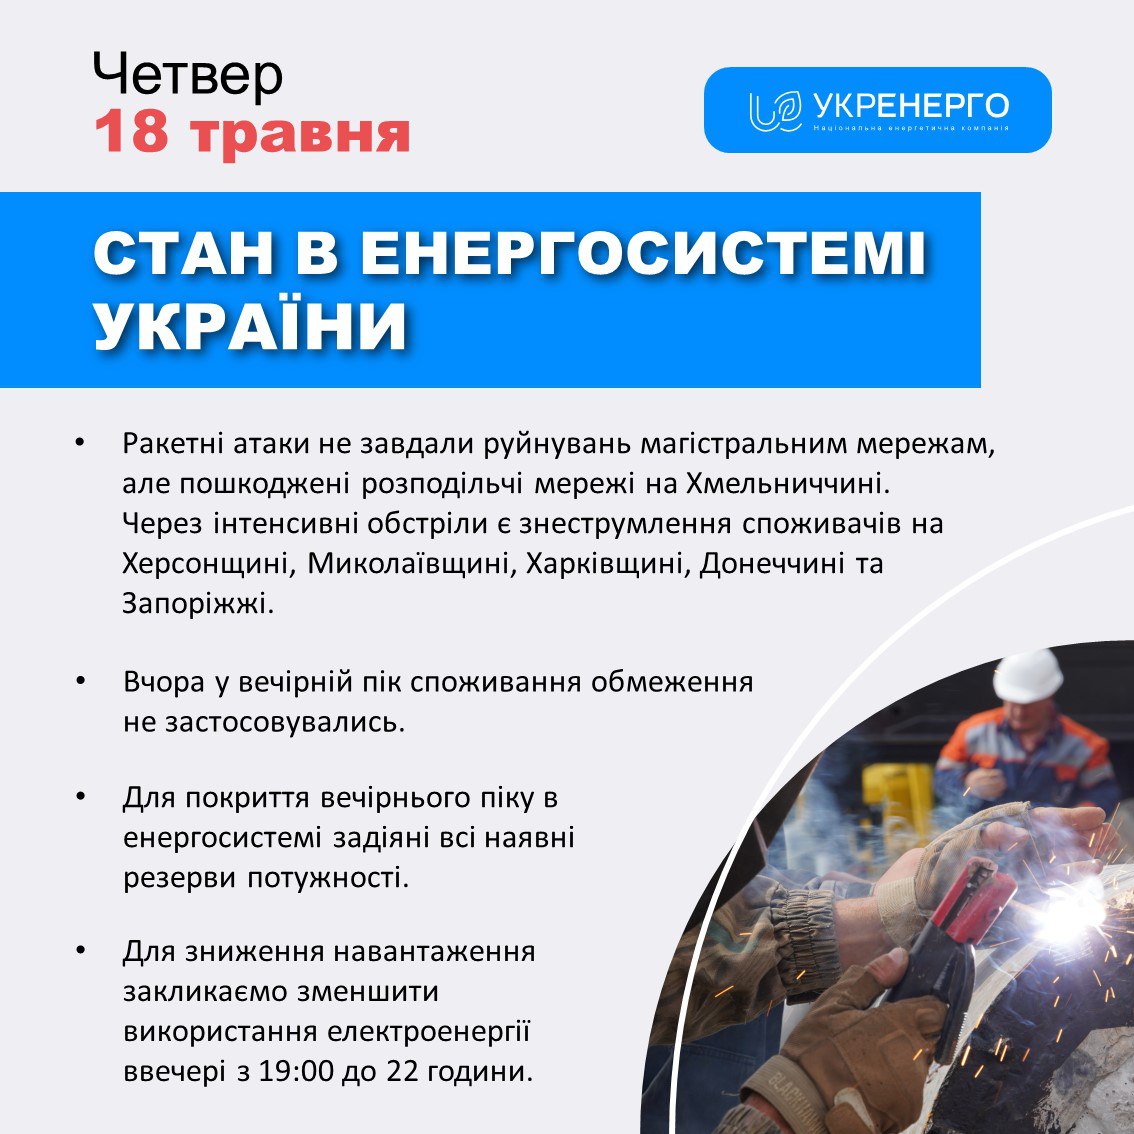 Через обстріли деякі райони Харківщини знеструмлені: йдуть роботи